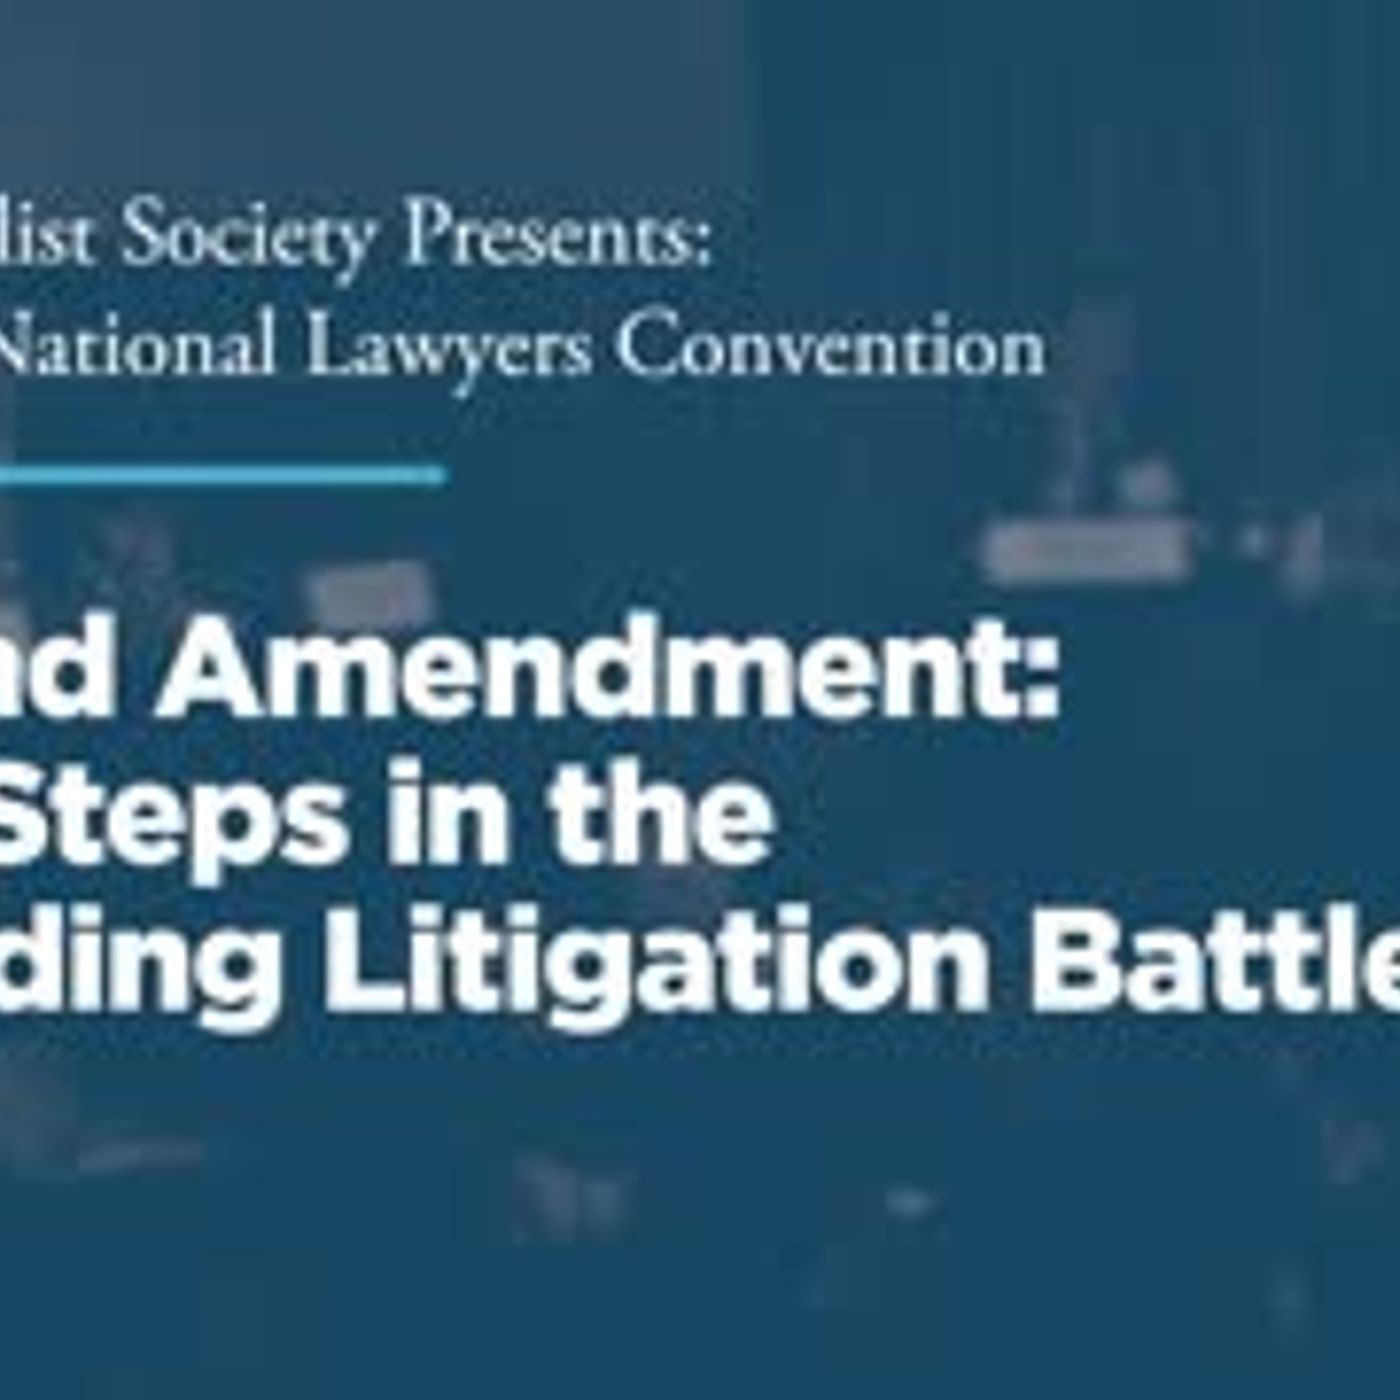 Second Amendment: Next Steps in the Unfolding Litigation Battle